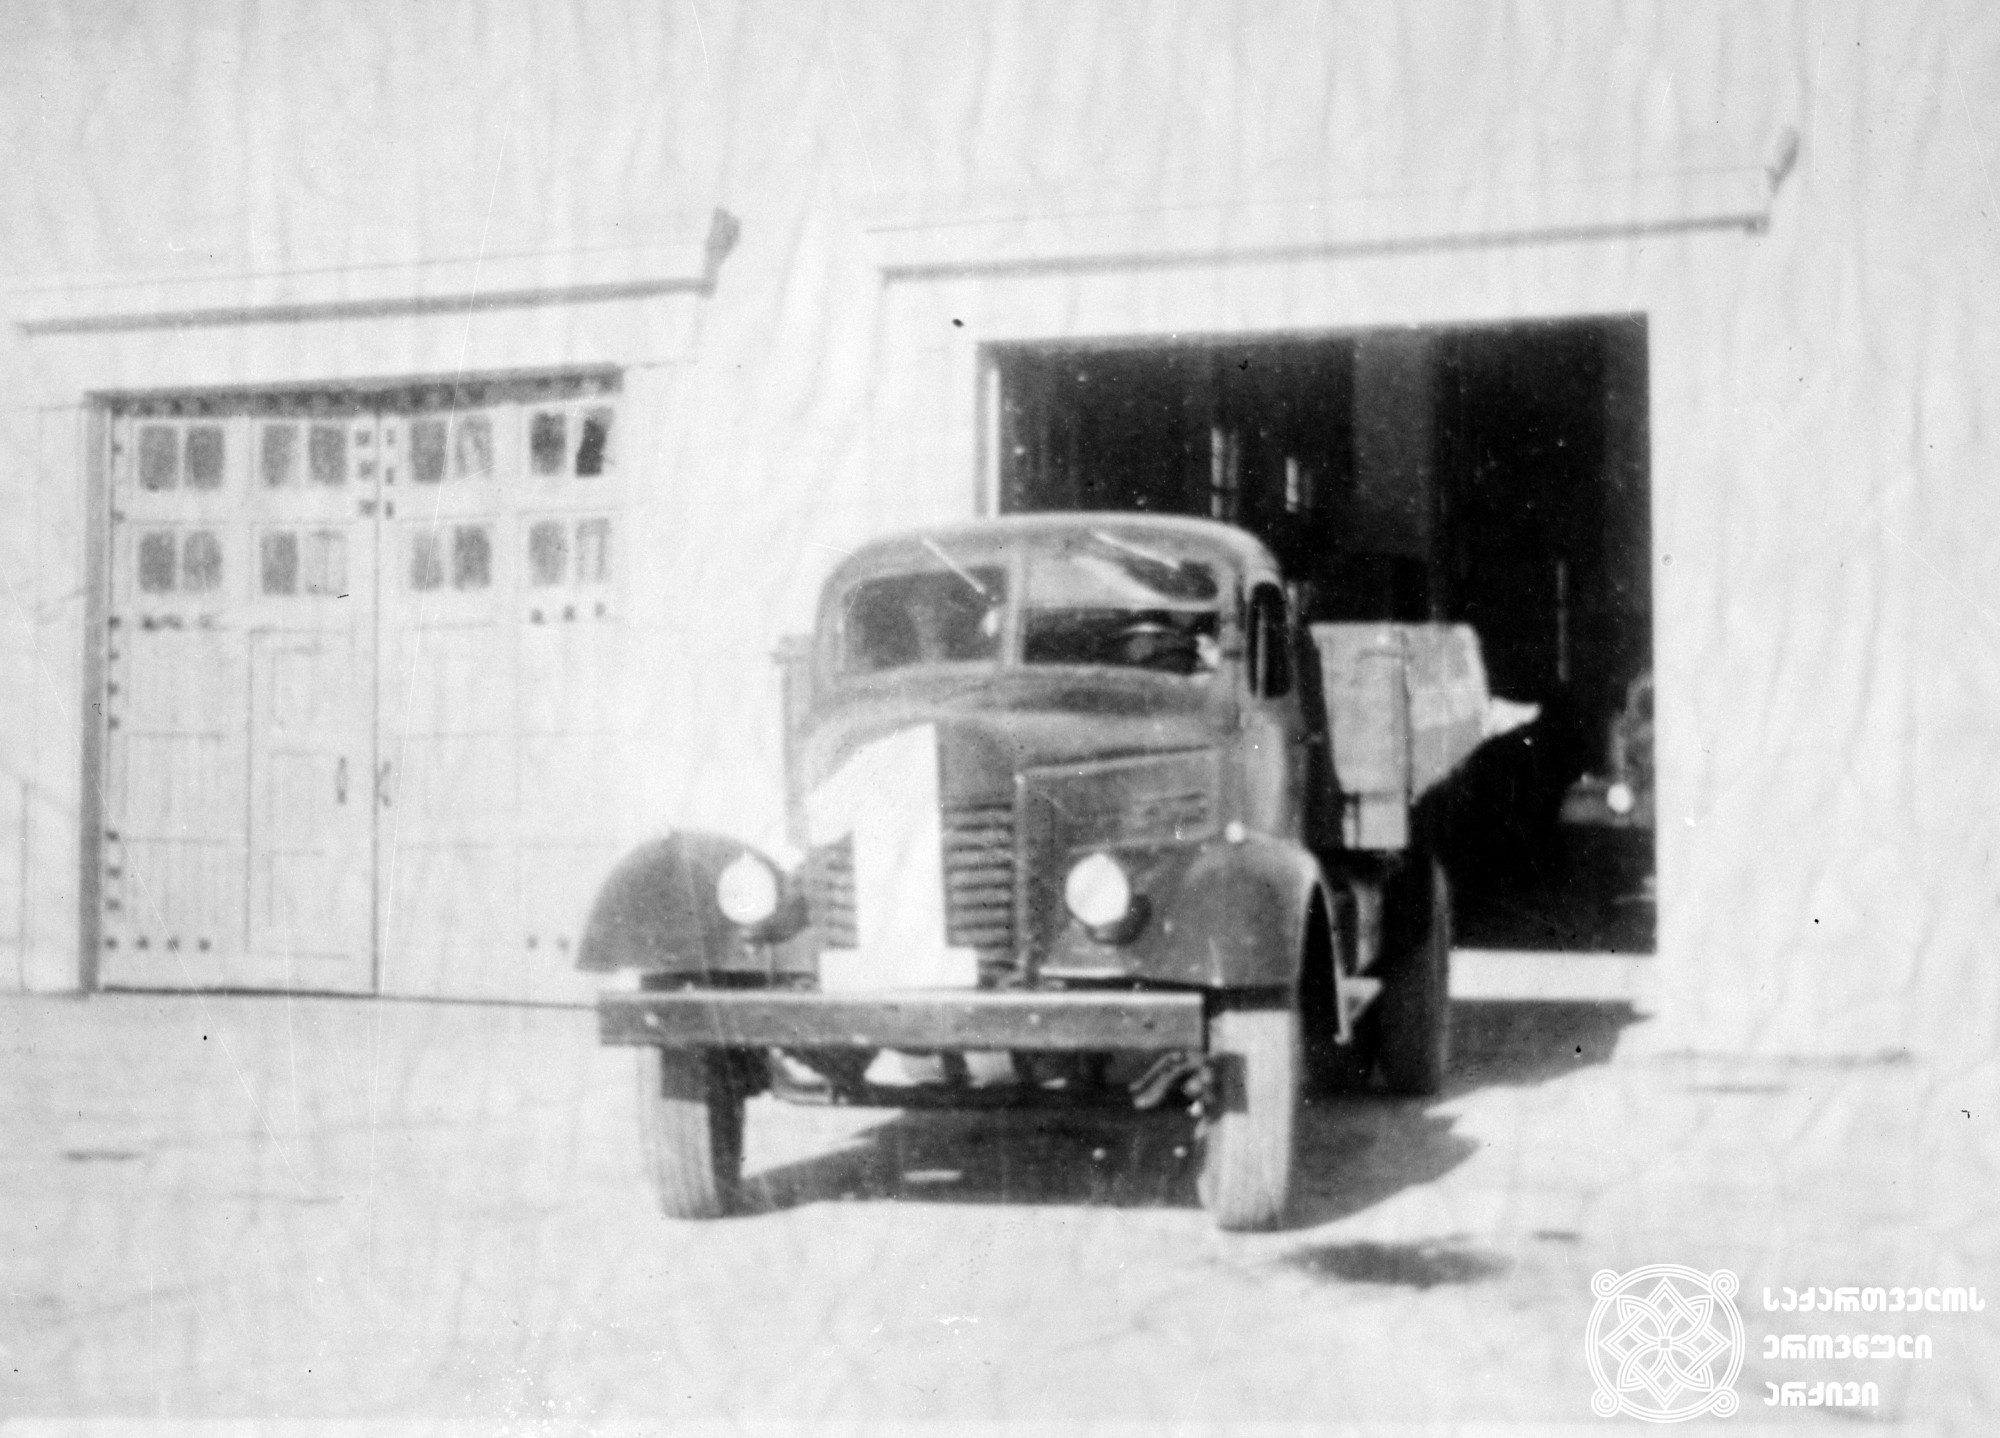 ქუთაისის საავტომობილო ქარხნის მიერ გამოშვებული პირველი ავტომობილი, 1951 წელი. 
<br>
The first car produced by the Kutaisi Automobile Plant. 1951.